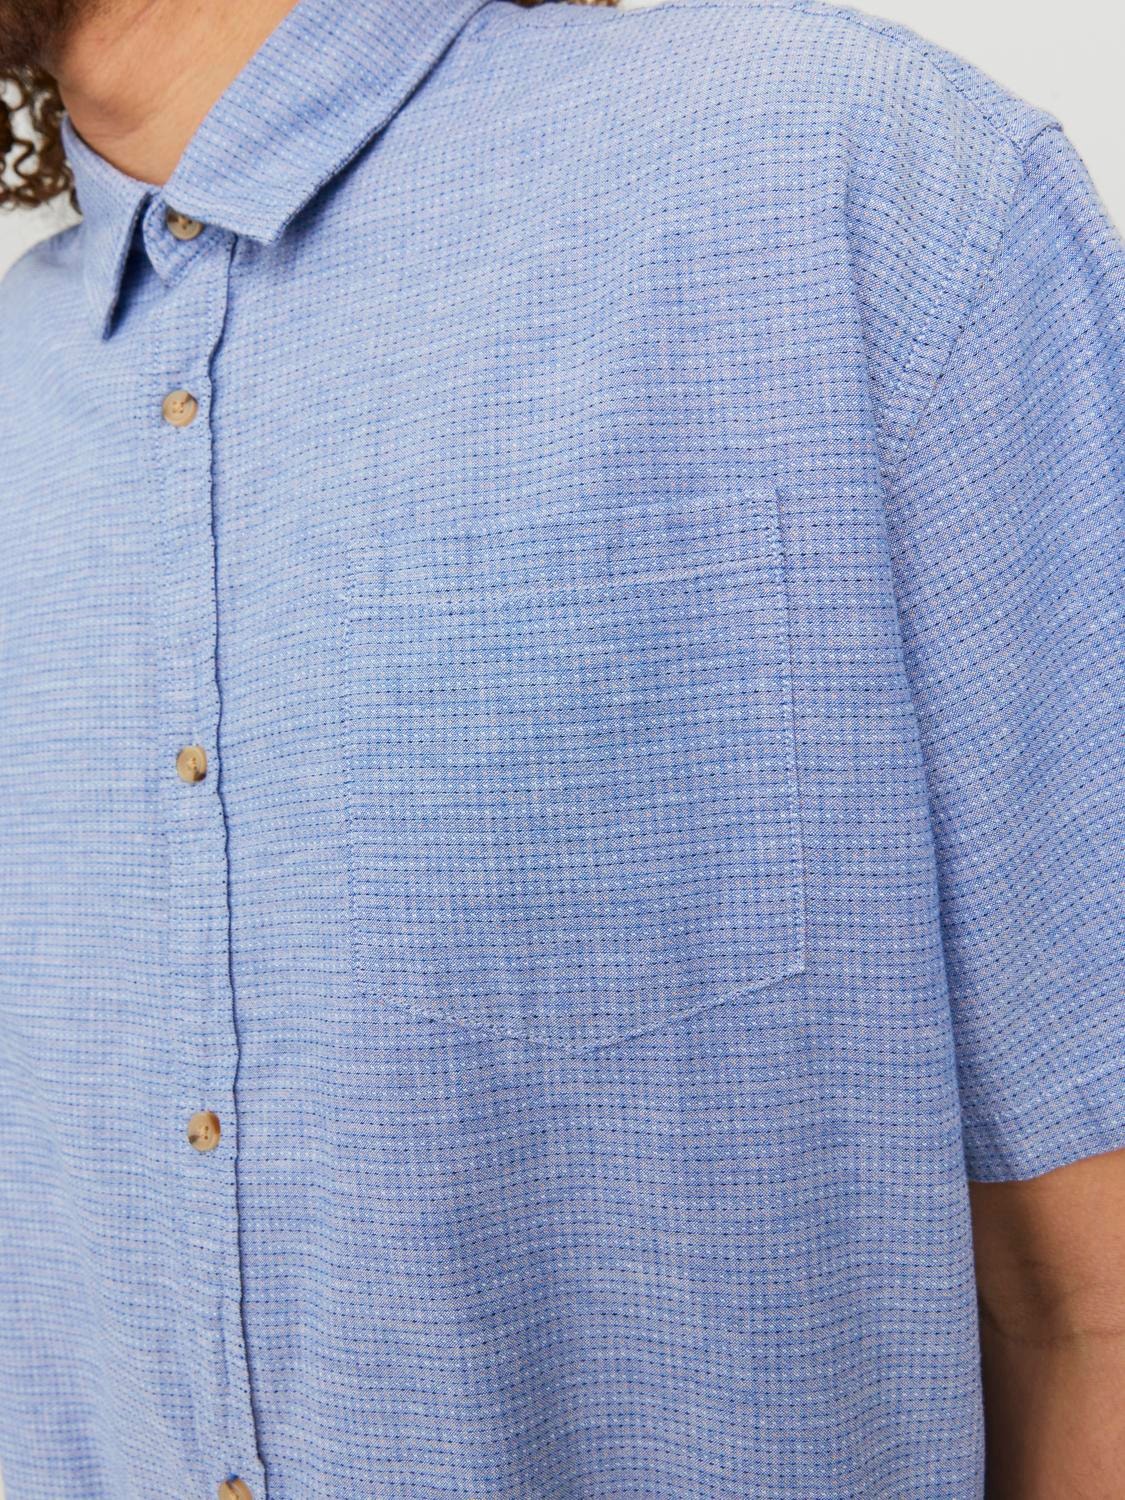 Jack & Jones Plus Size Camisa informal Regular Fit -Ensign Blue - 12235368